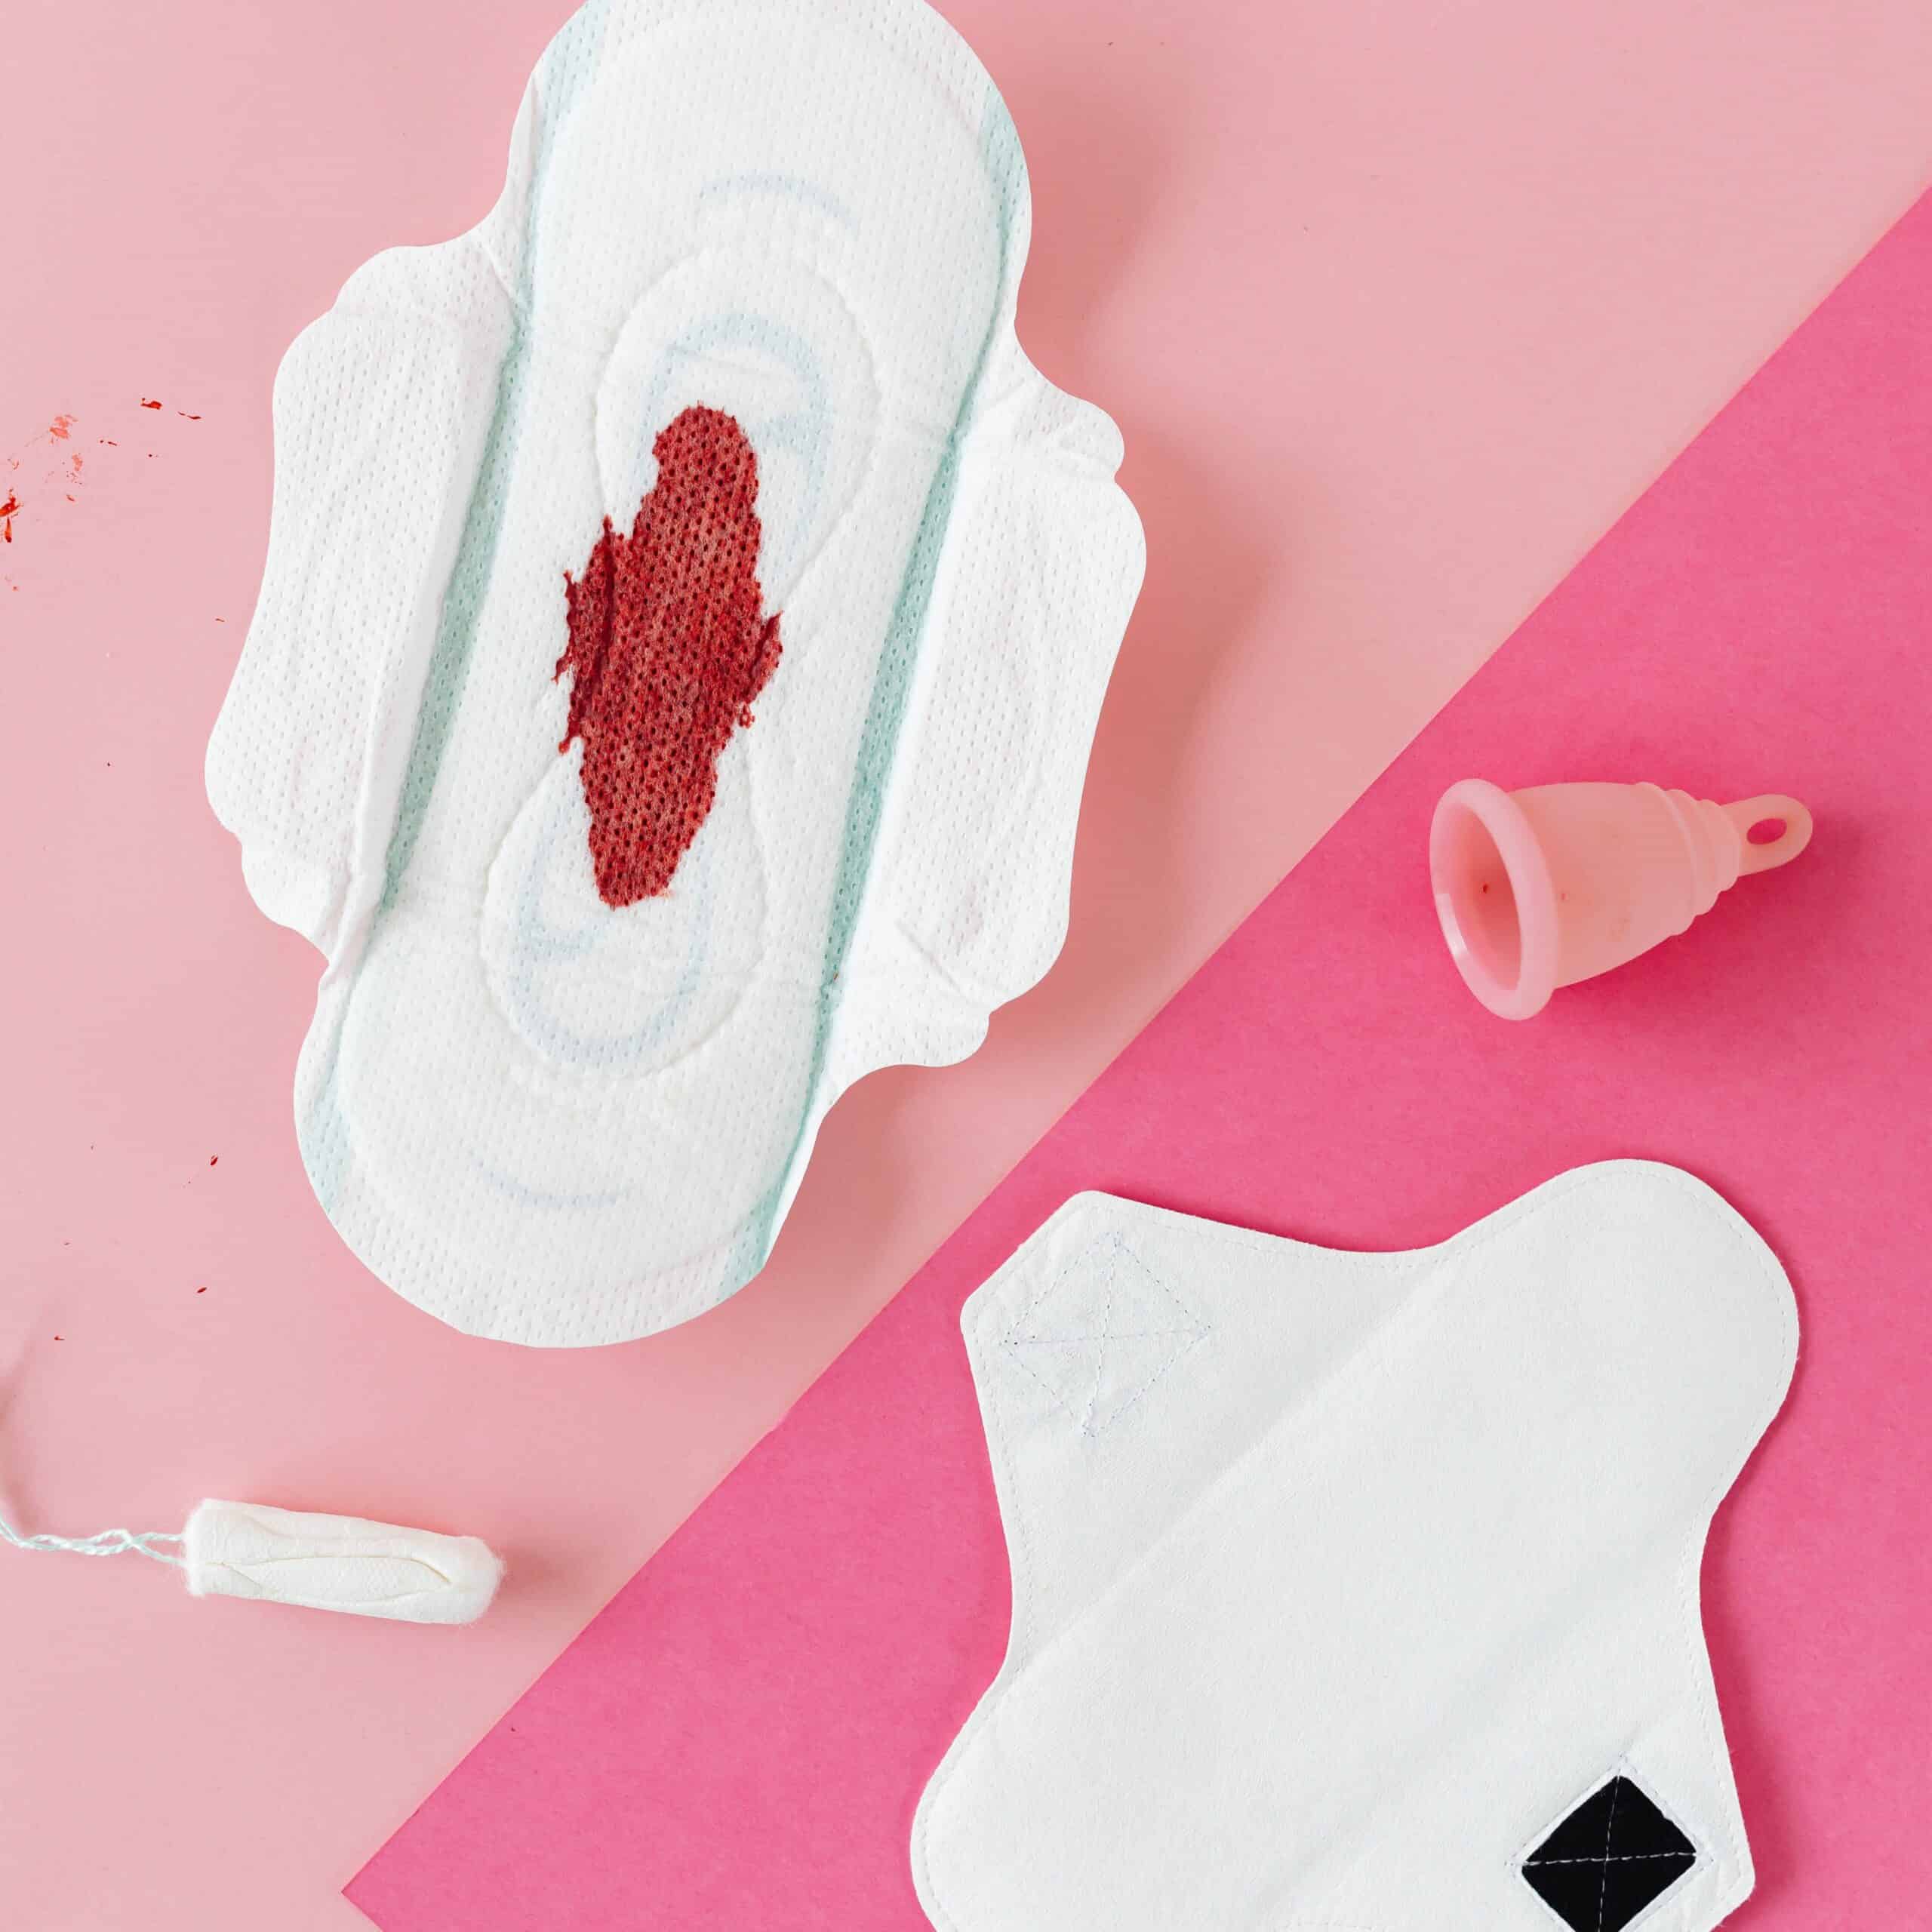 Menstruationstasse, Binde, Tampon und Einlage liegen gemeinsam auf einem Untergrund